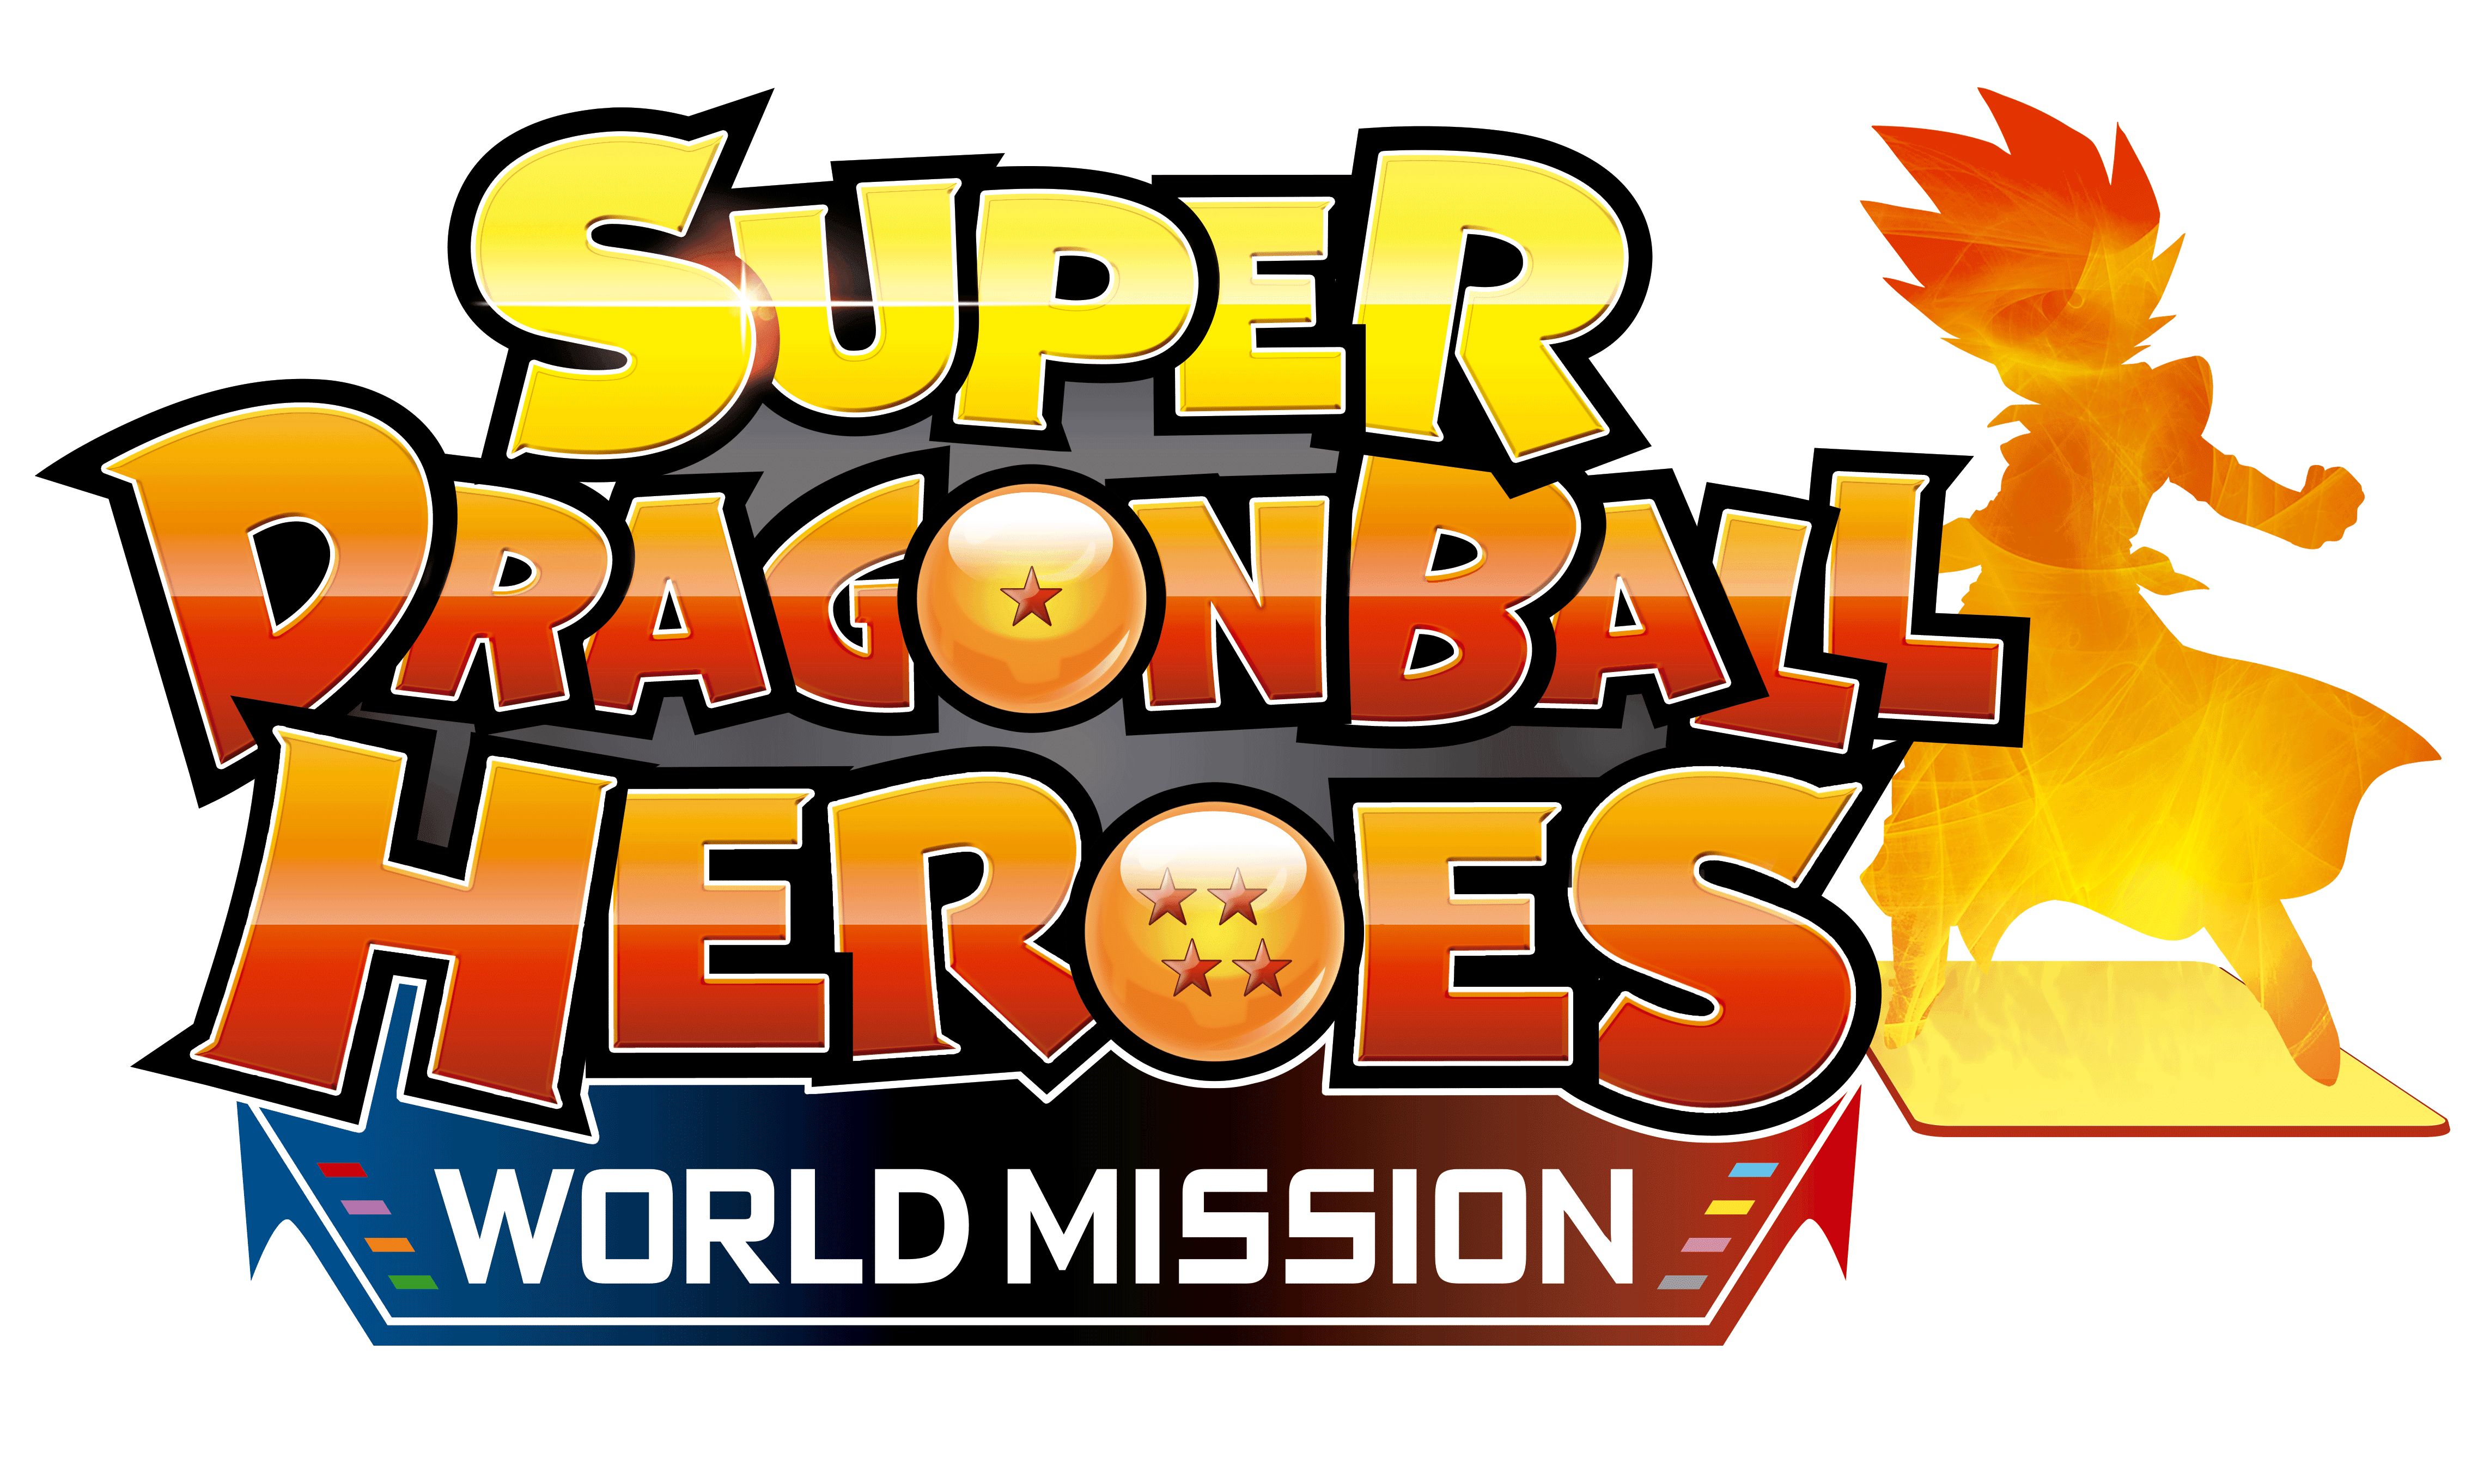 SUPER DRAGON BALL HEROES WORLD MISSION ANNONCÉ POUR SWITCH ET STEAM EN EUROPE